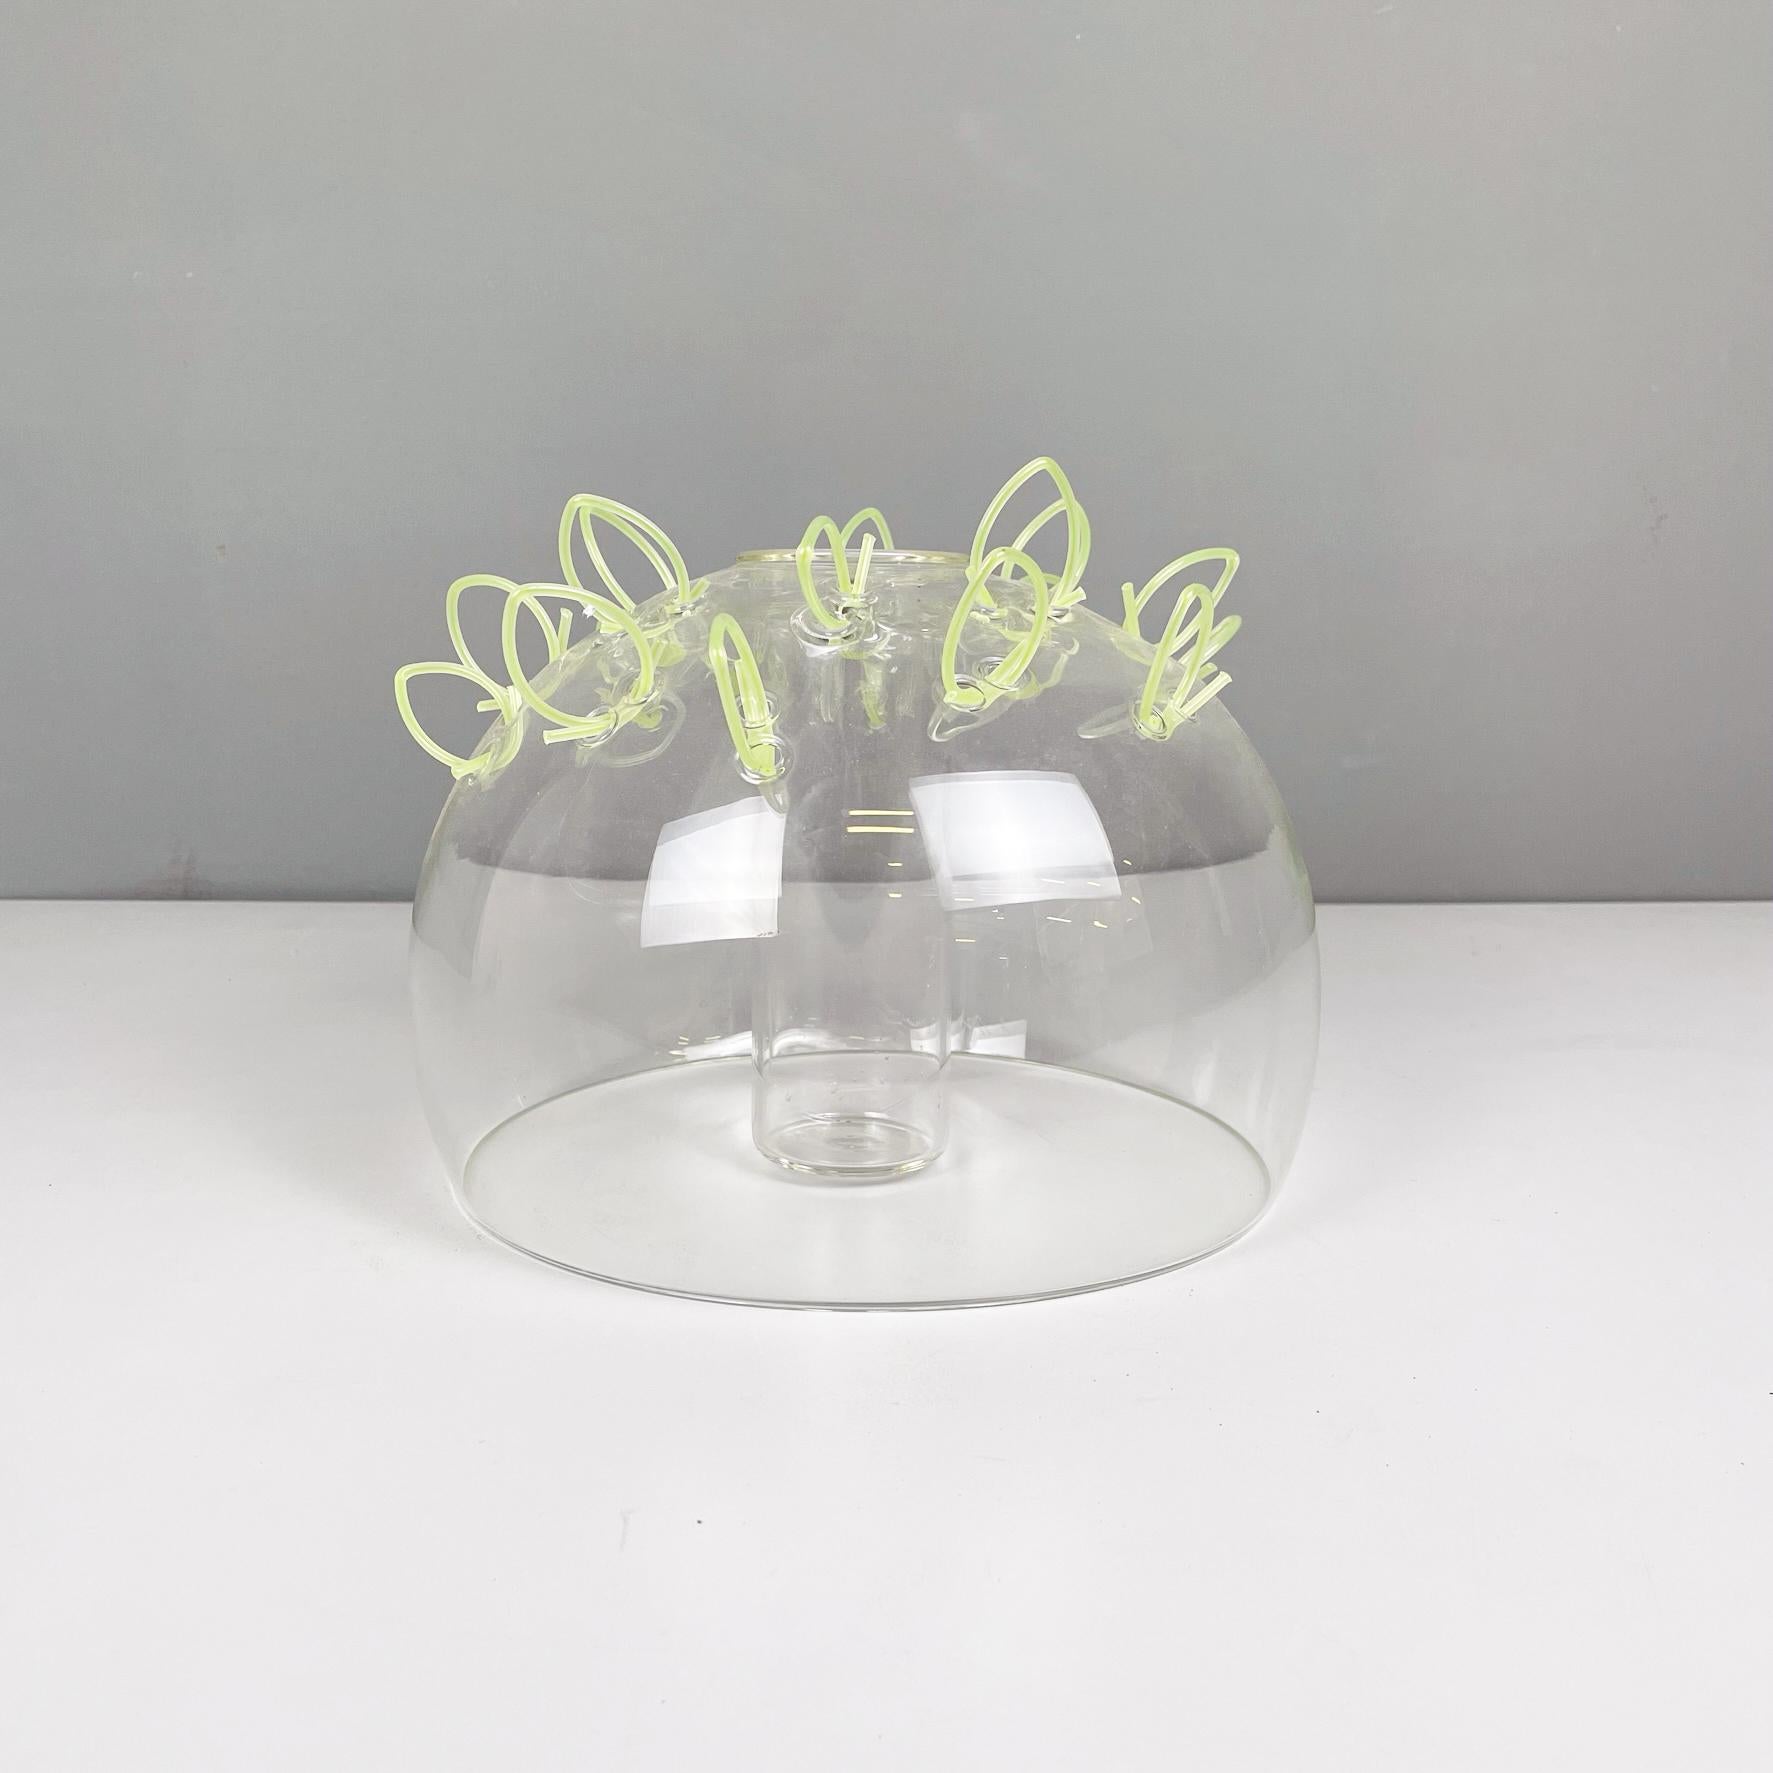 Vase italien postmoderne en verre et plastique vert de Cleto Munari, années 2000
Vase hémisphérique en verre perforé. Il y a de petits fils de plastique vert clair dans les trous. Il possède une structure interne cylindrique où l'on place les